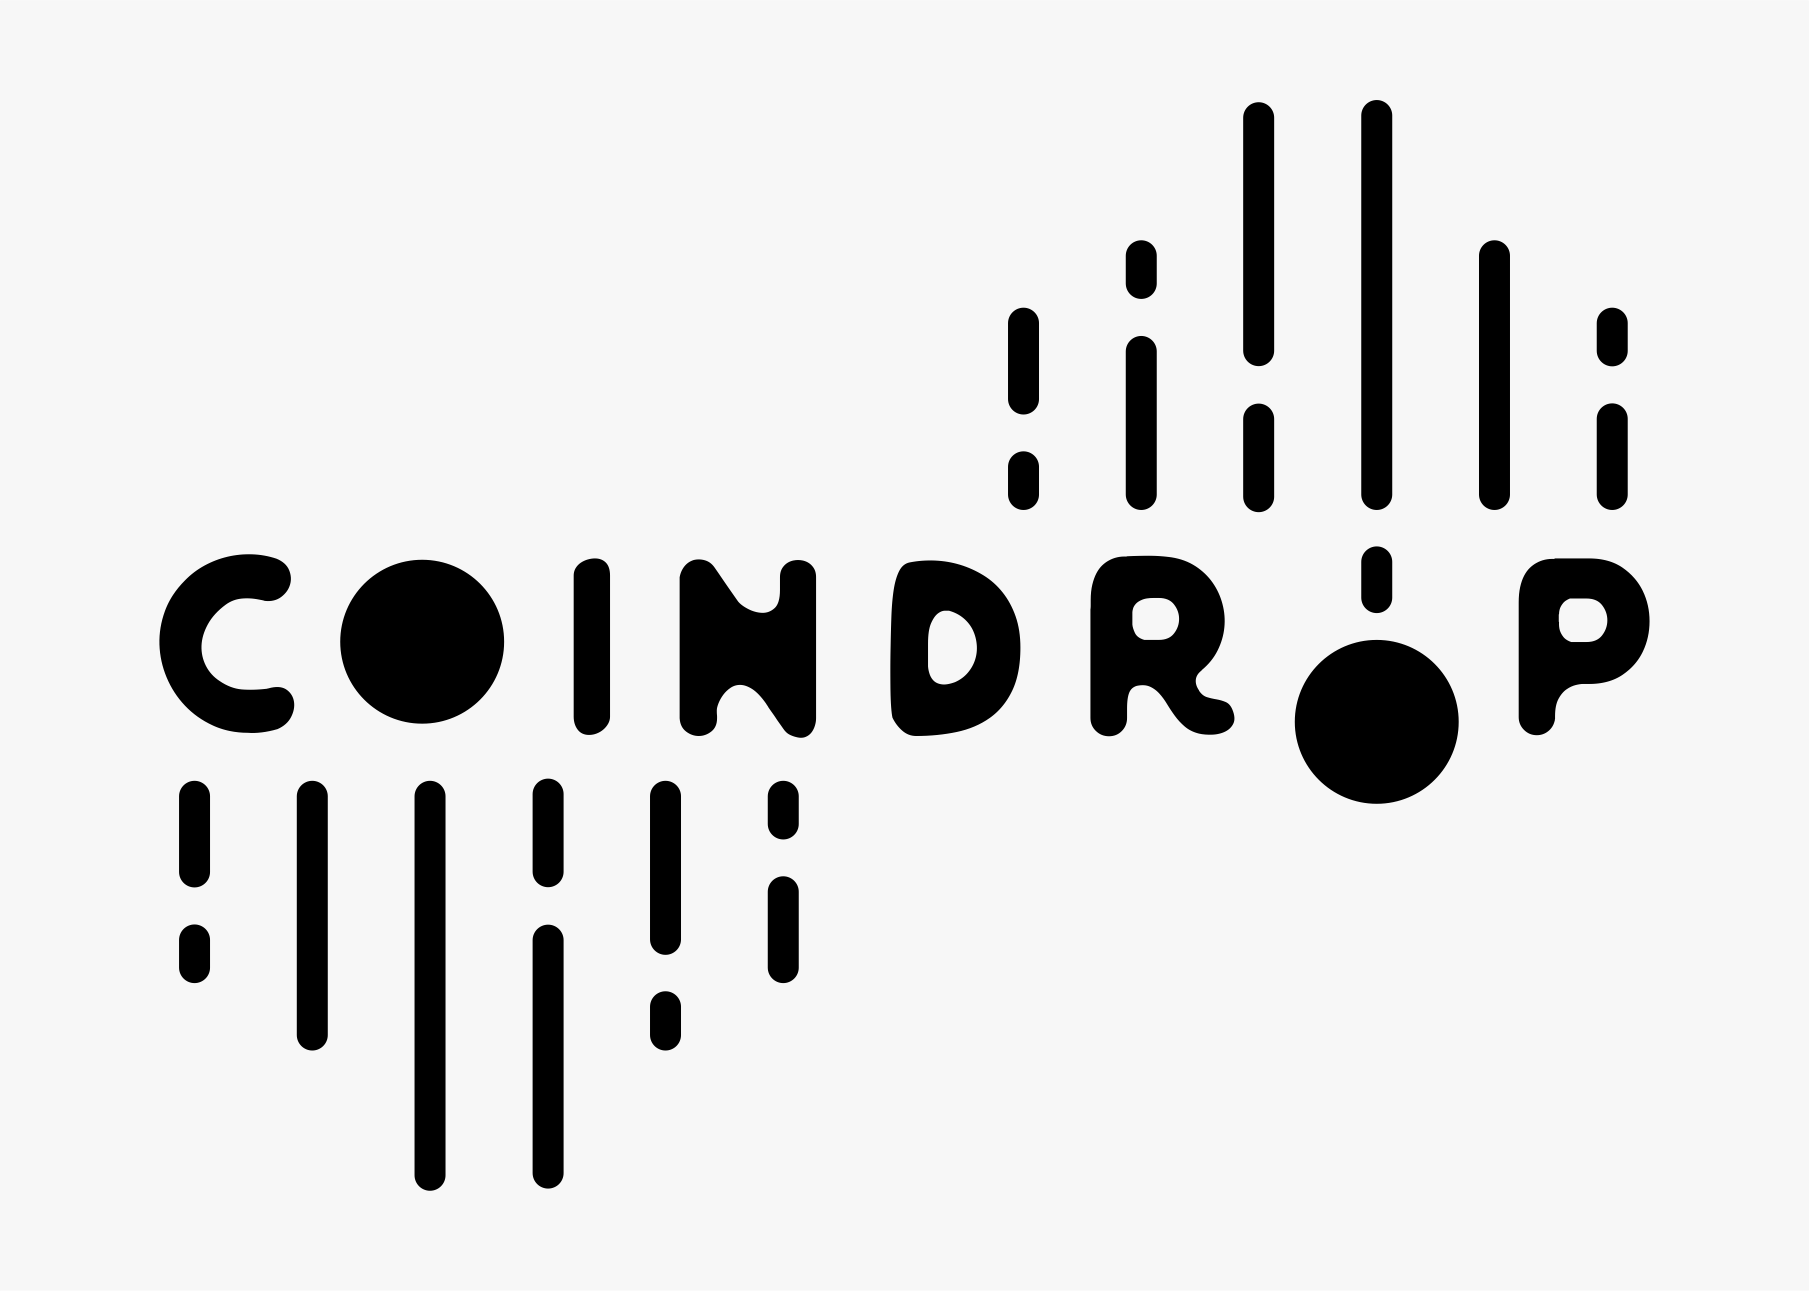 Coindrop Logo